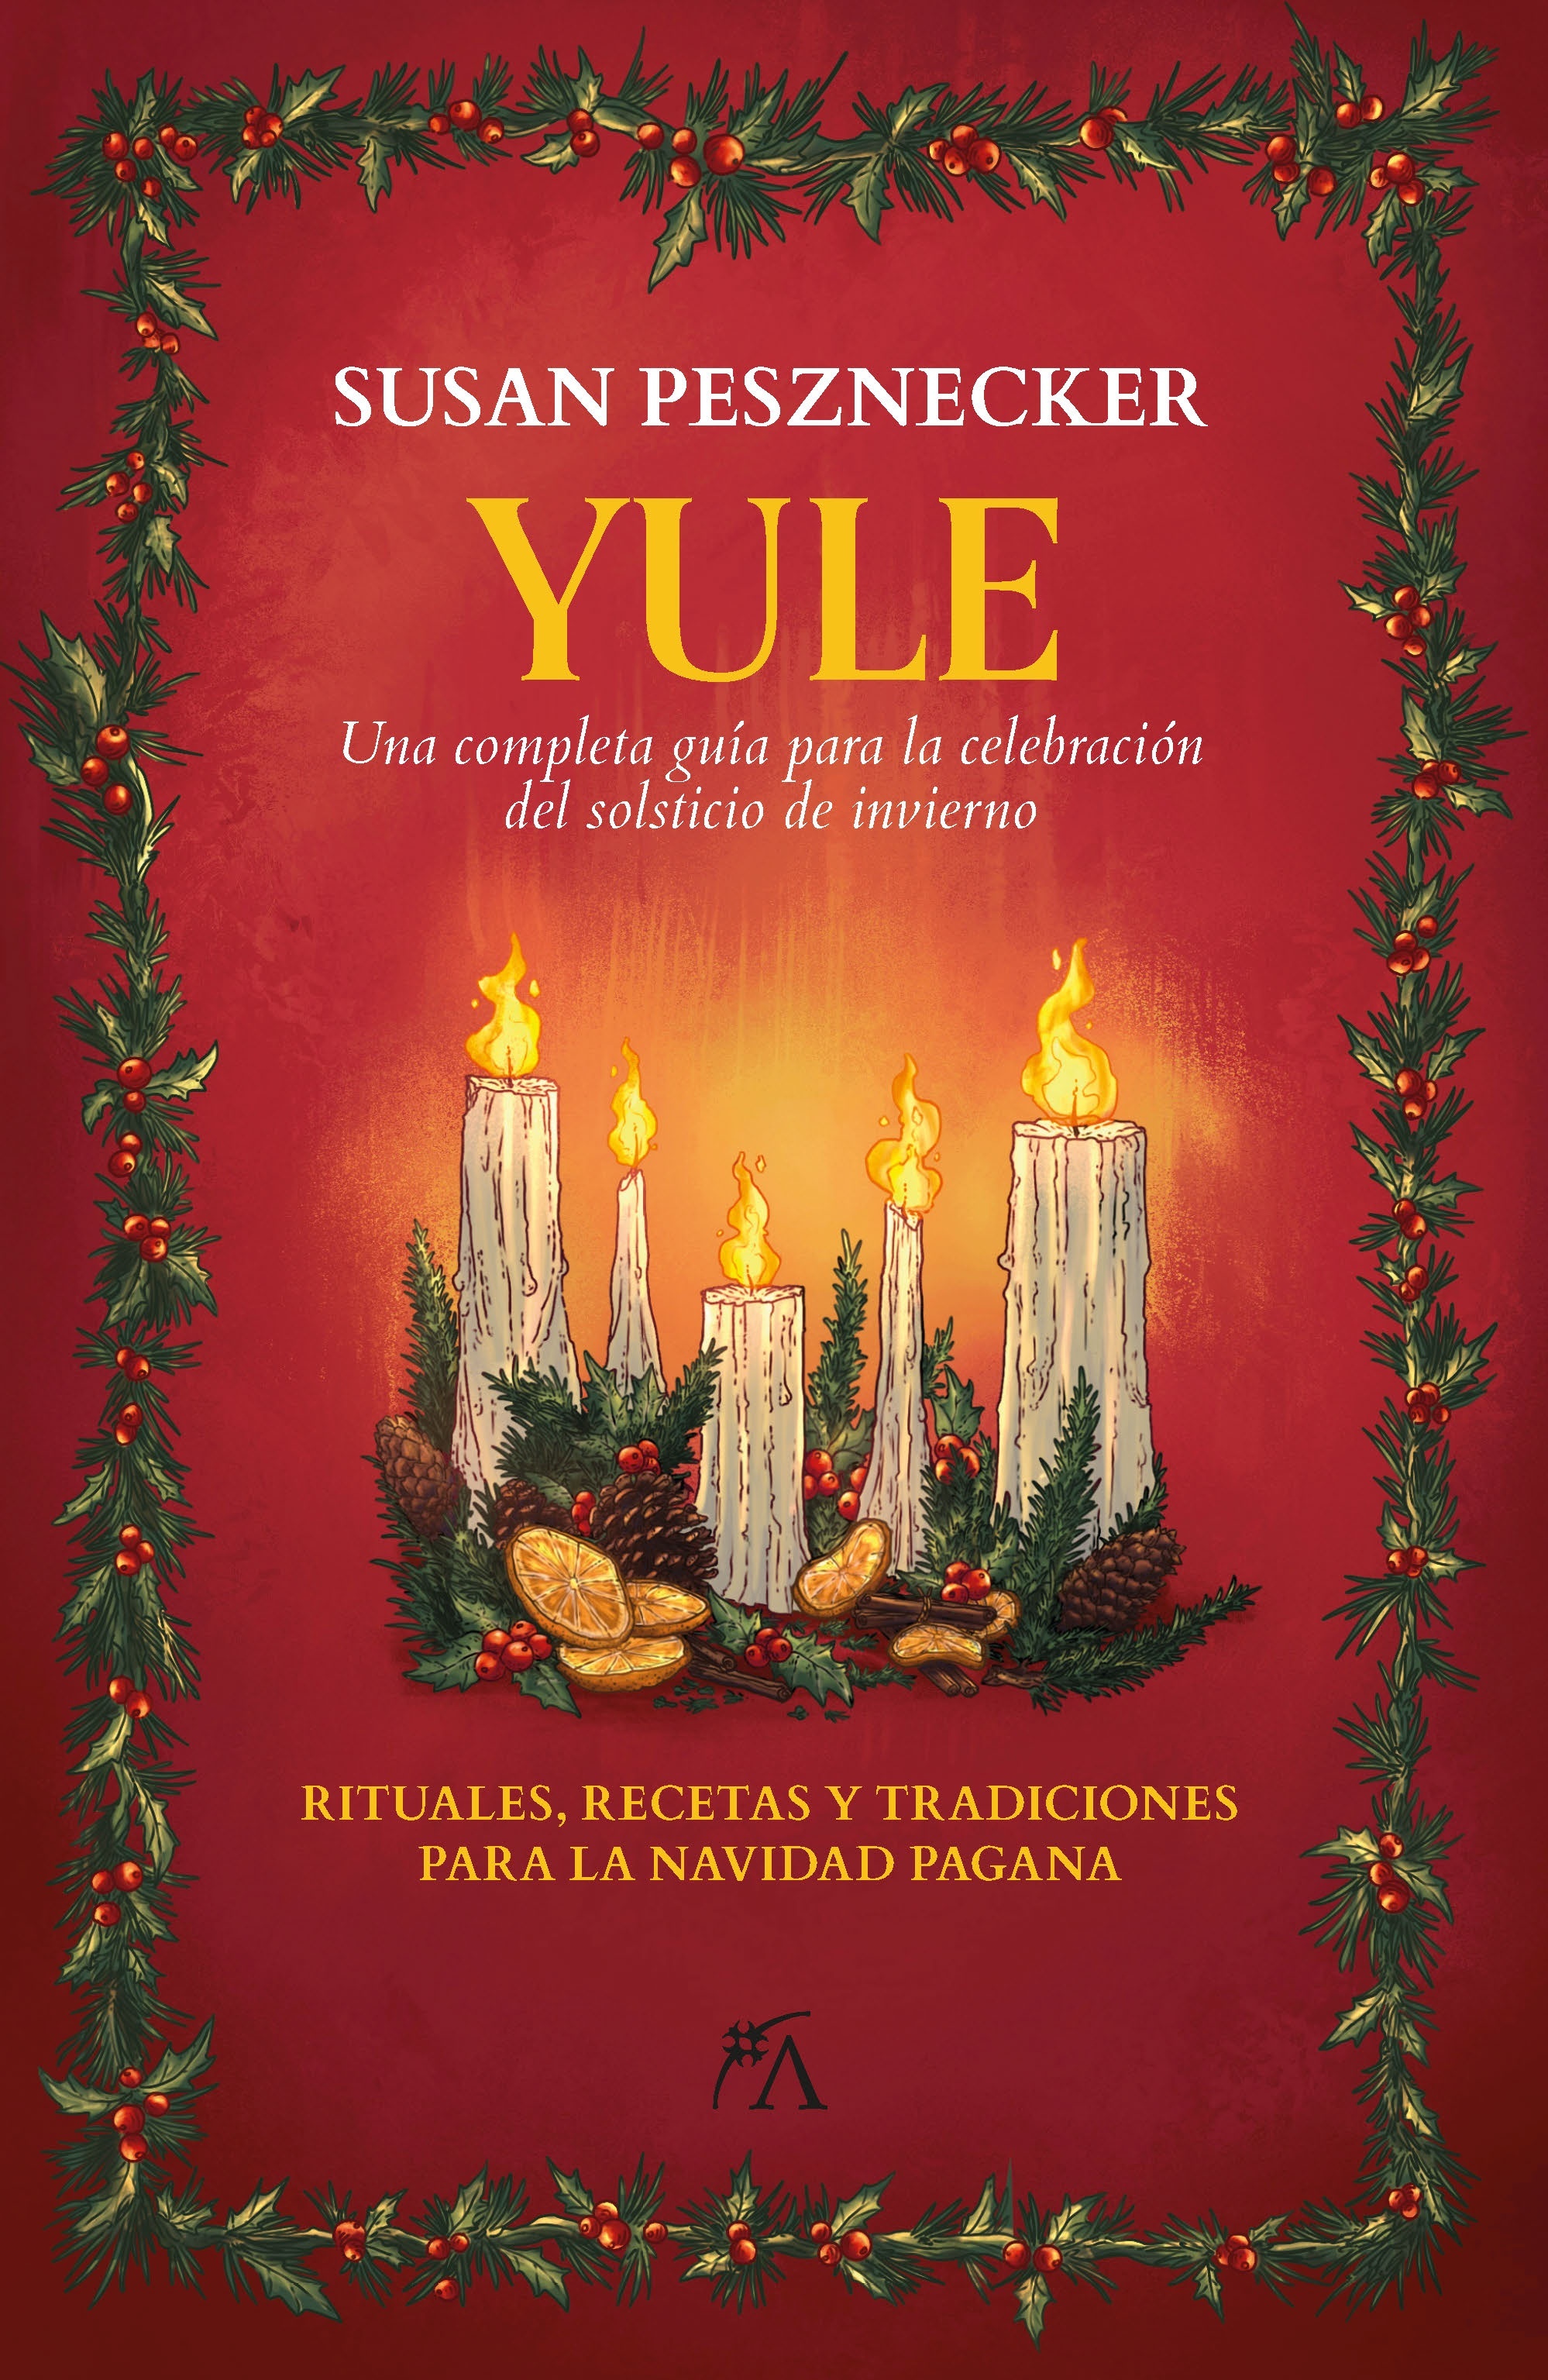 Yule "Una completa guía para la celebración del solsticio de invierno". 